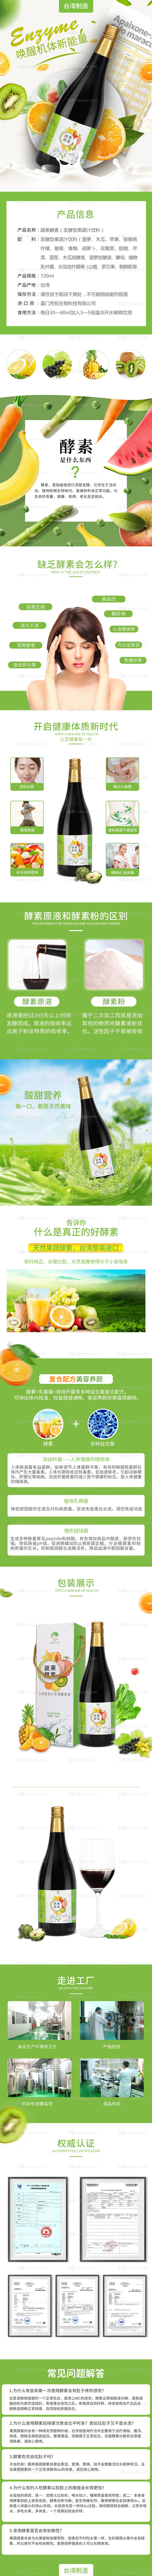 素材乐-果蔬酵素保健品饮品口服液电商详情页